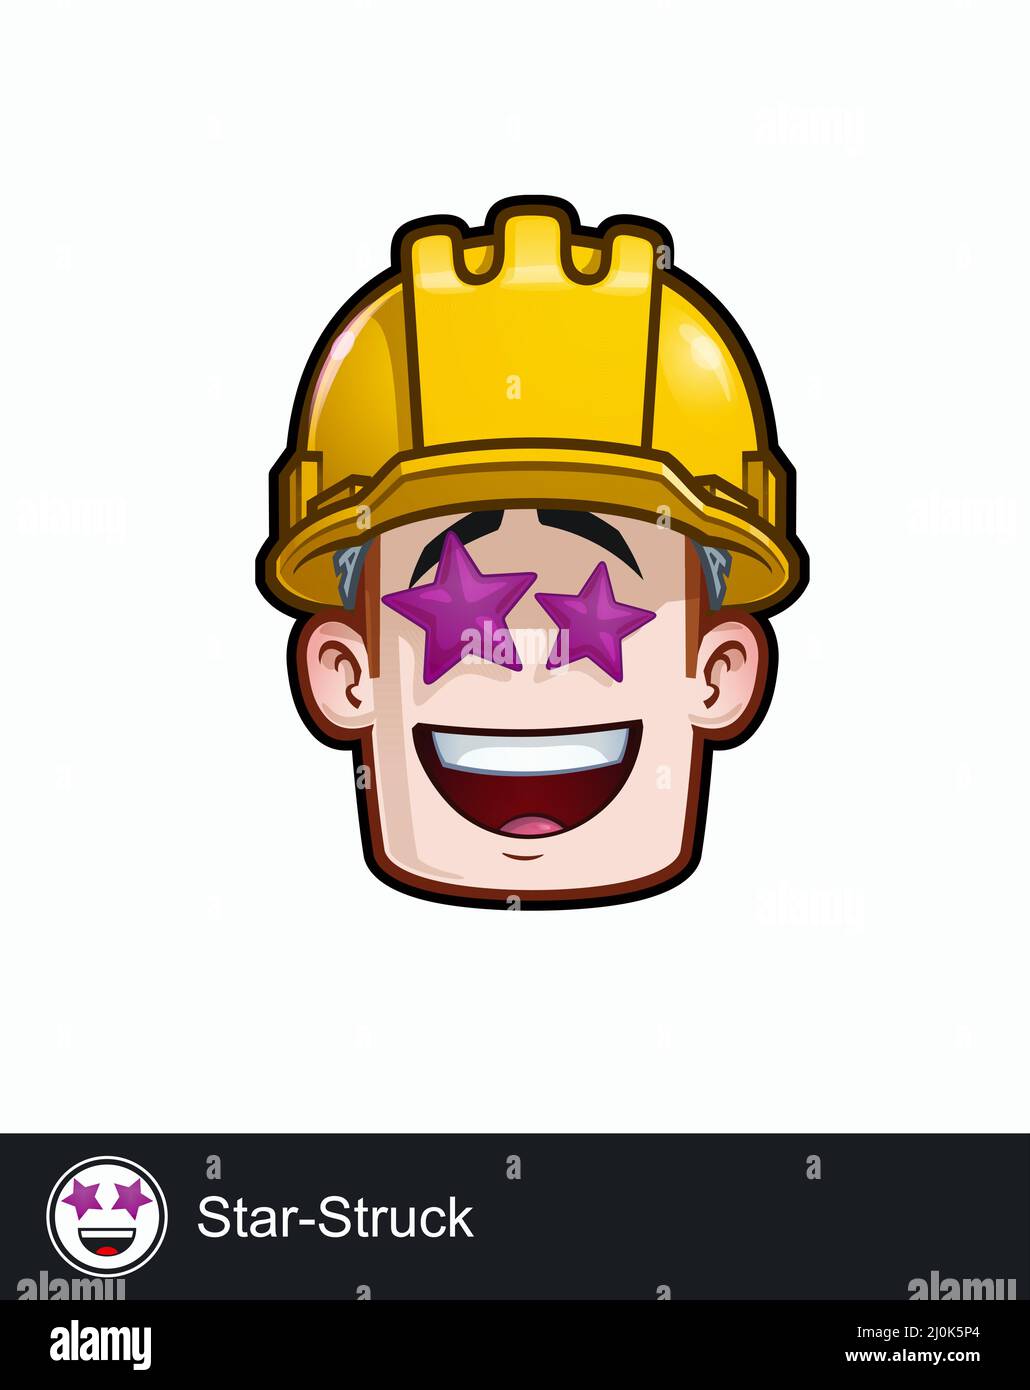 Ikone eines Bauarbeitergesichtes mit Star Struck emotionalem Ausdruck. Alle Elemente übersichtlich auf gut beschriebenen Ebenen und Gruppen. Stock Vektor